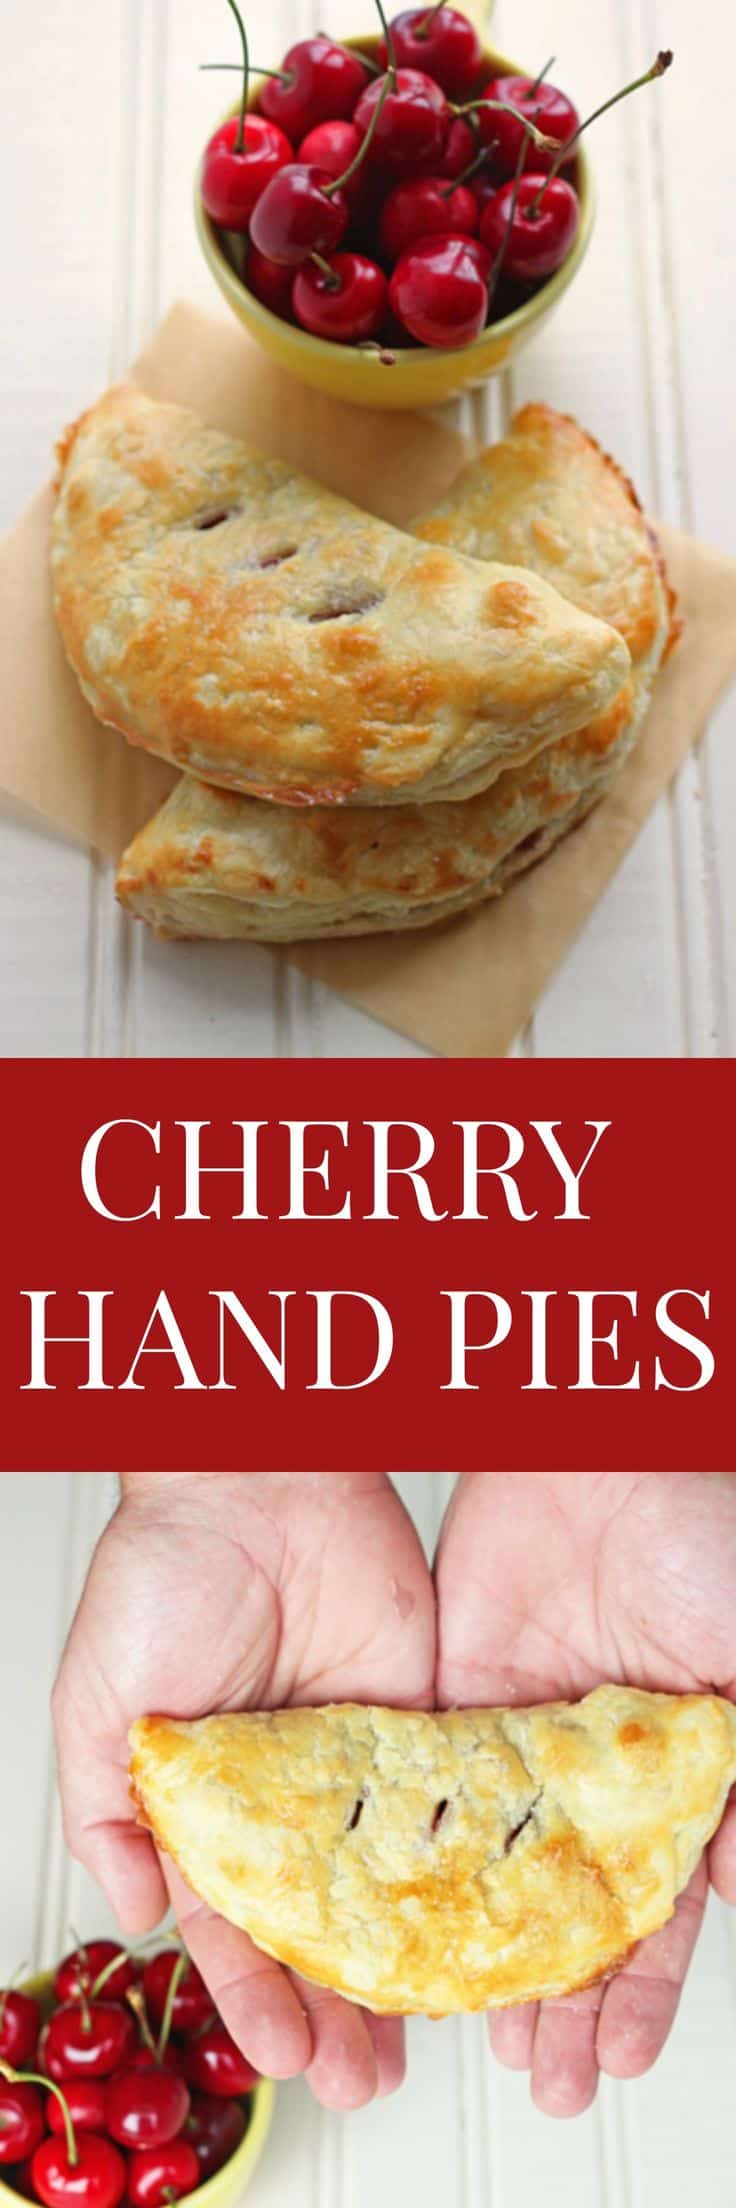 Cherry hand pies